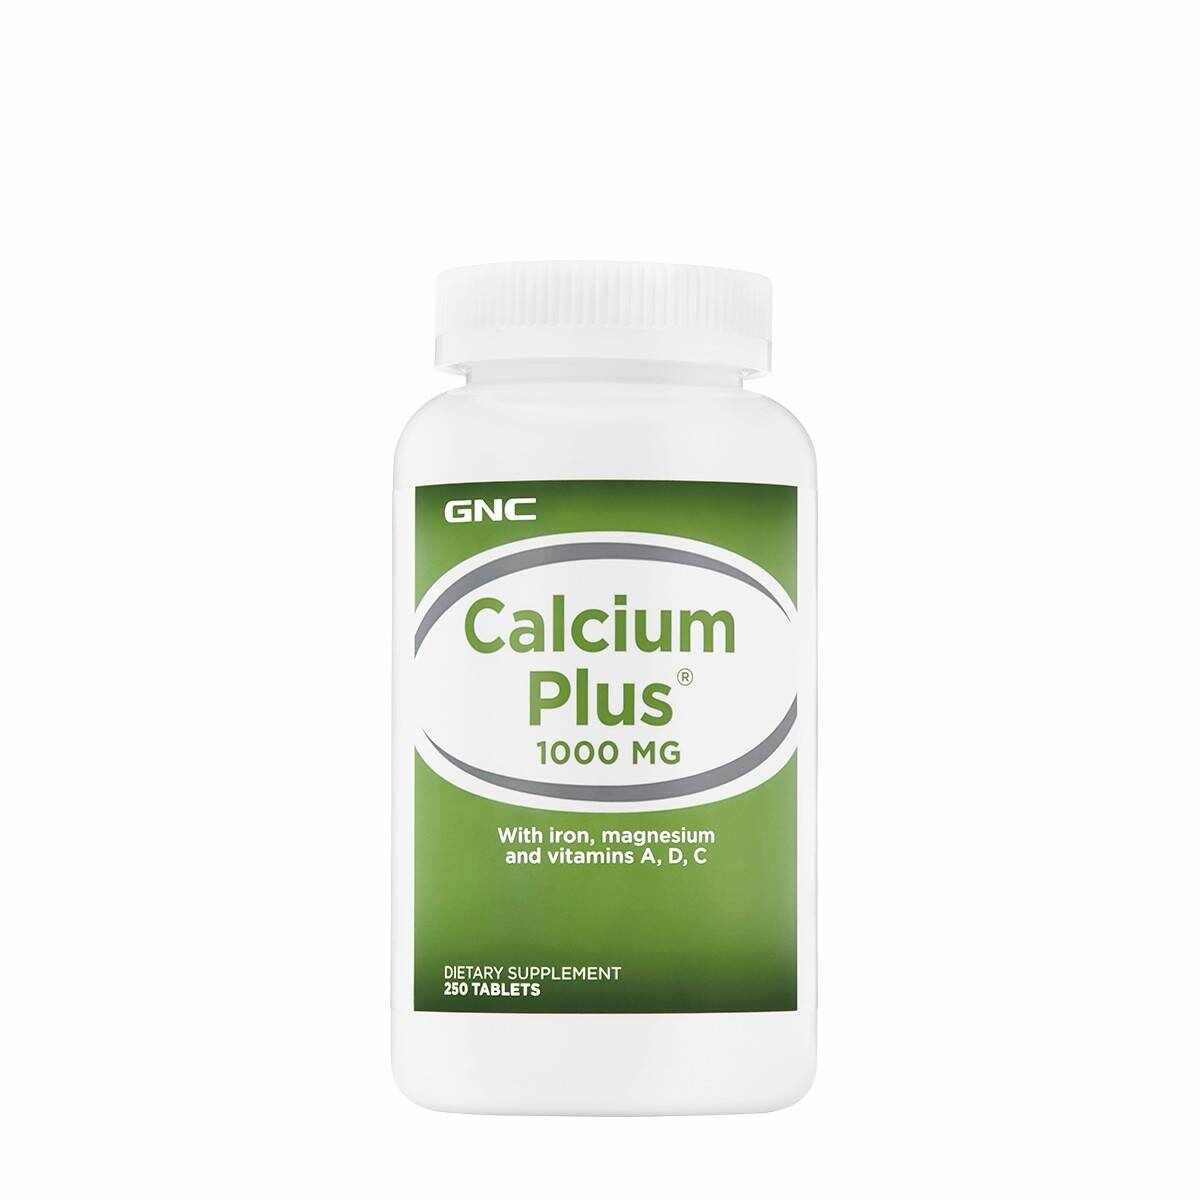 Calcium Plus 1000Mg, Calciu, 250tbl - Gnc